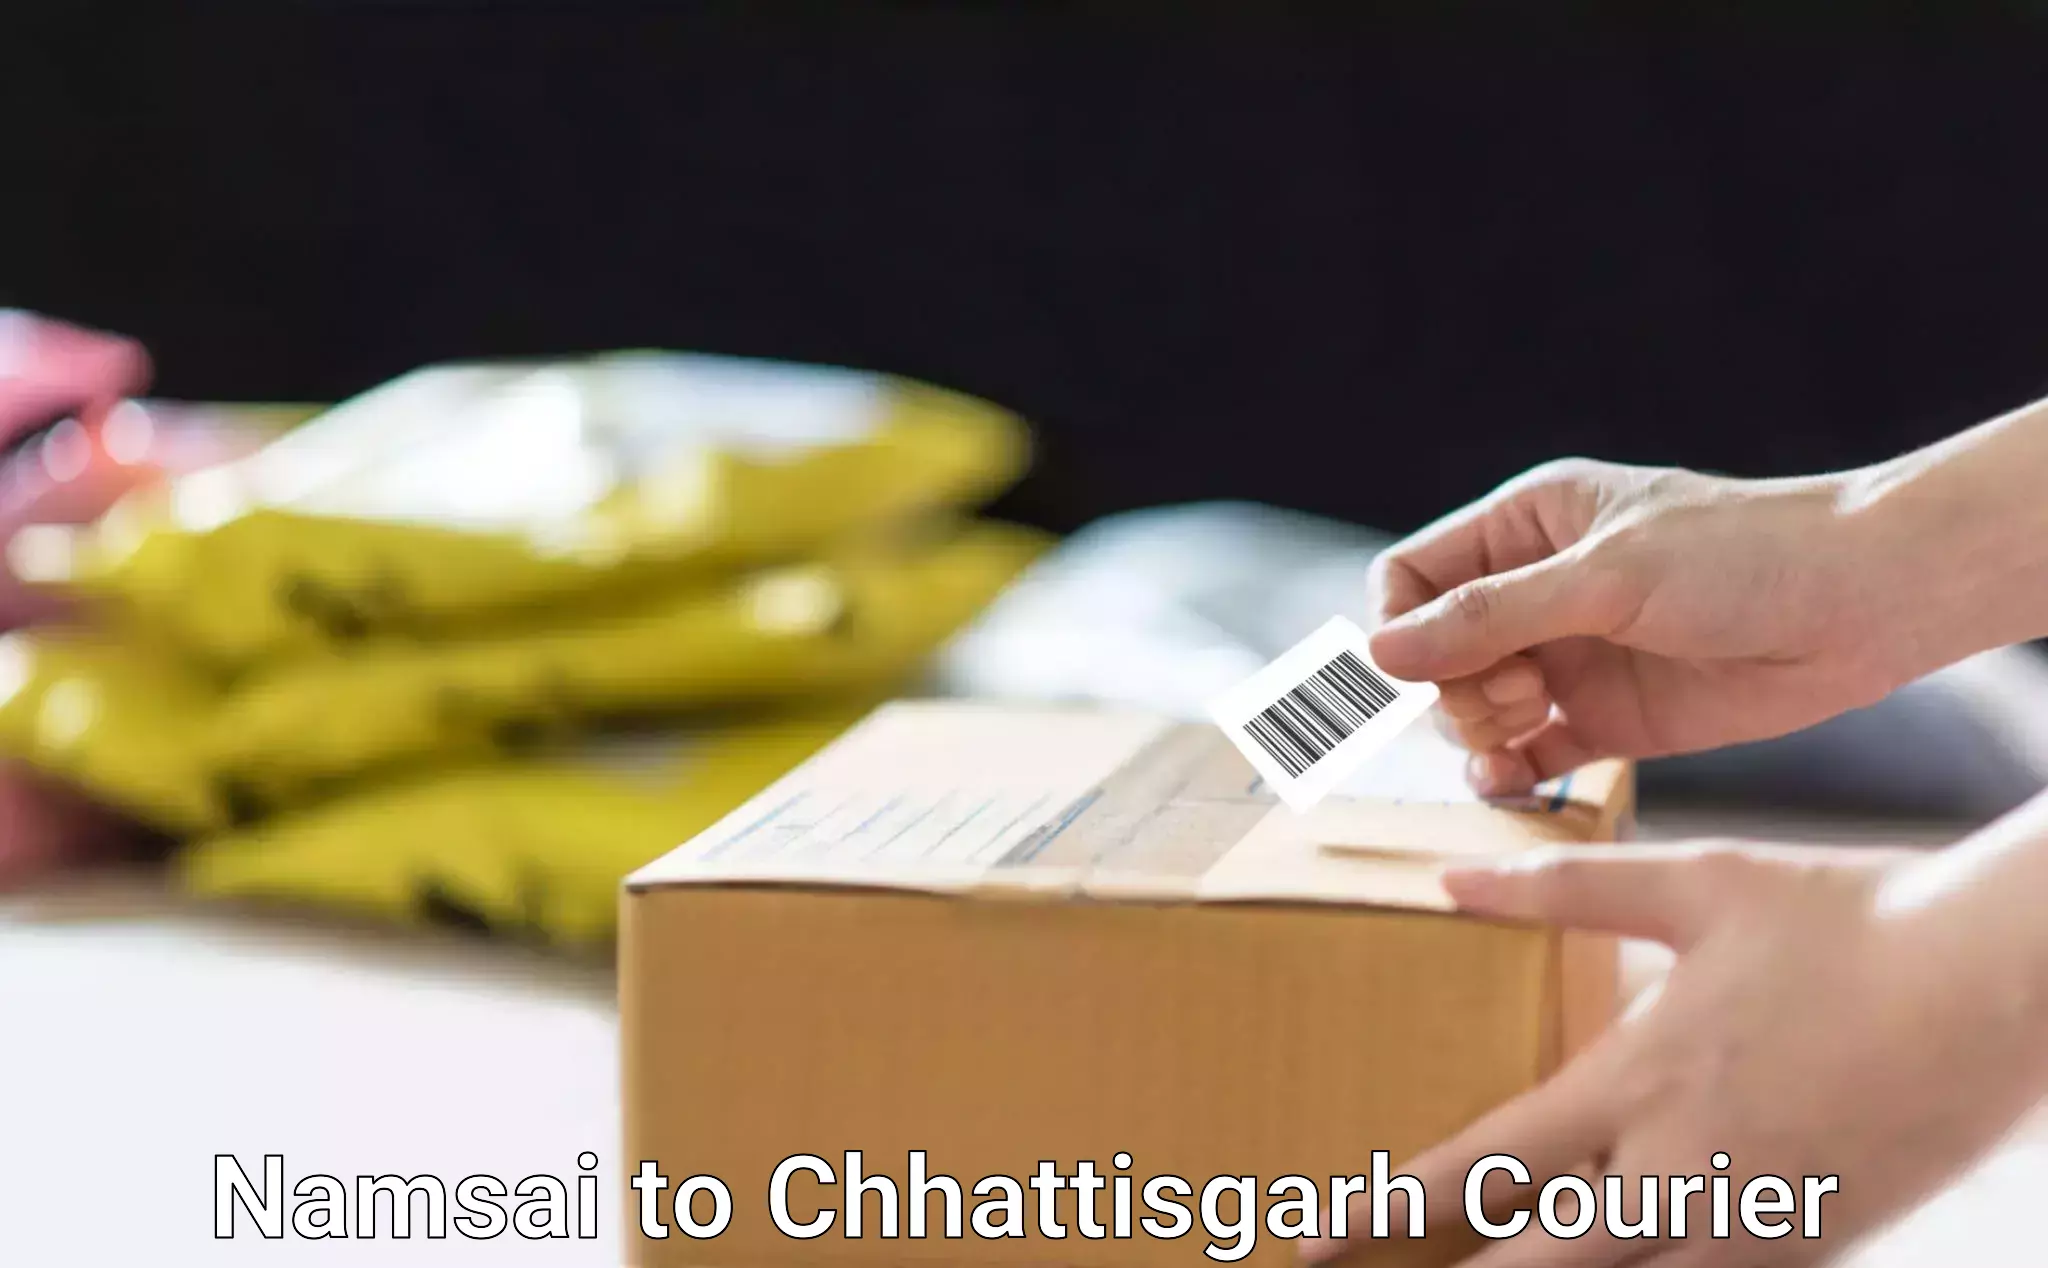 Cash on delivery service Namsai to Chhattisgarh